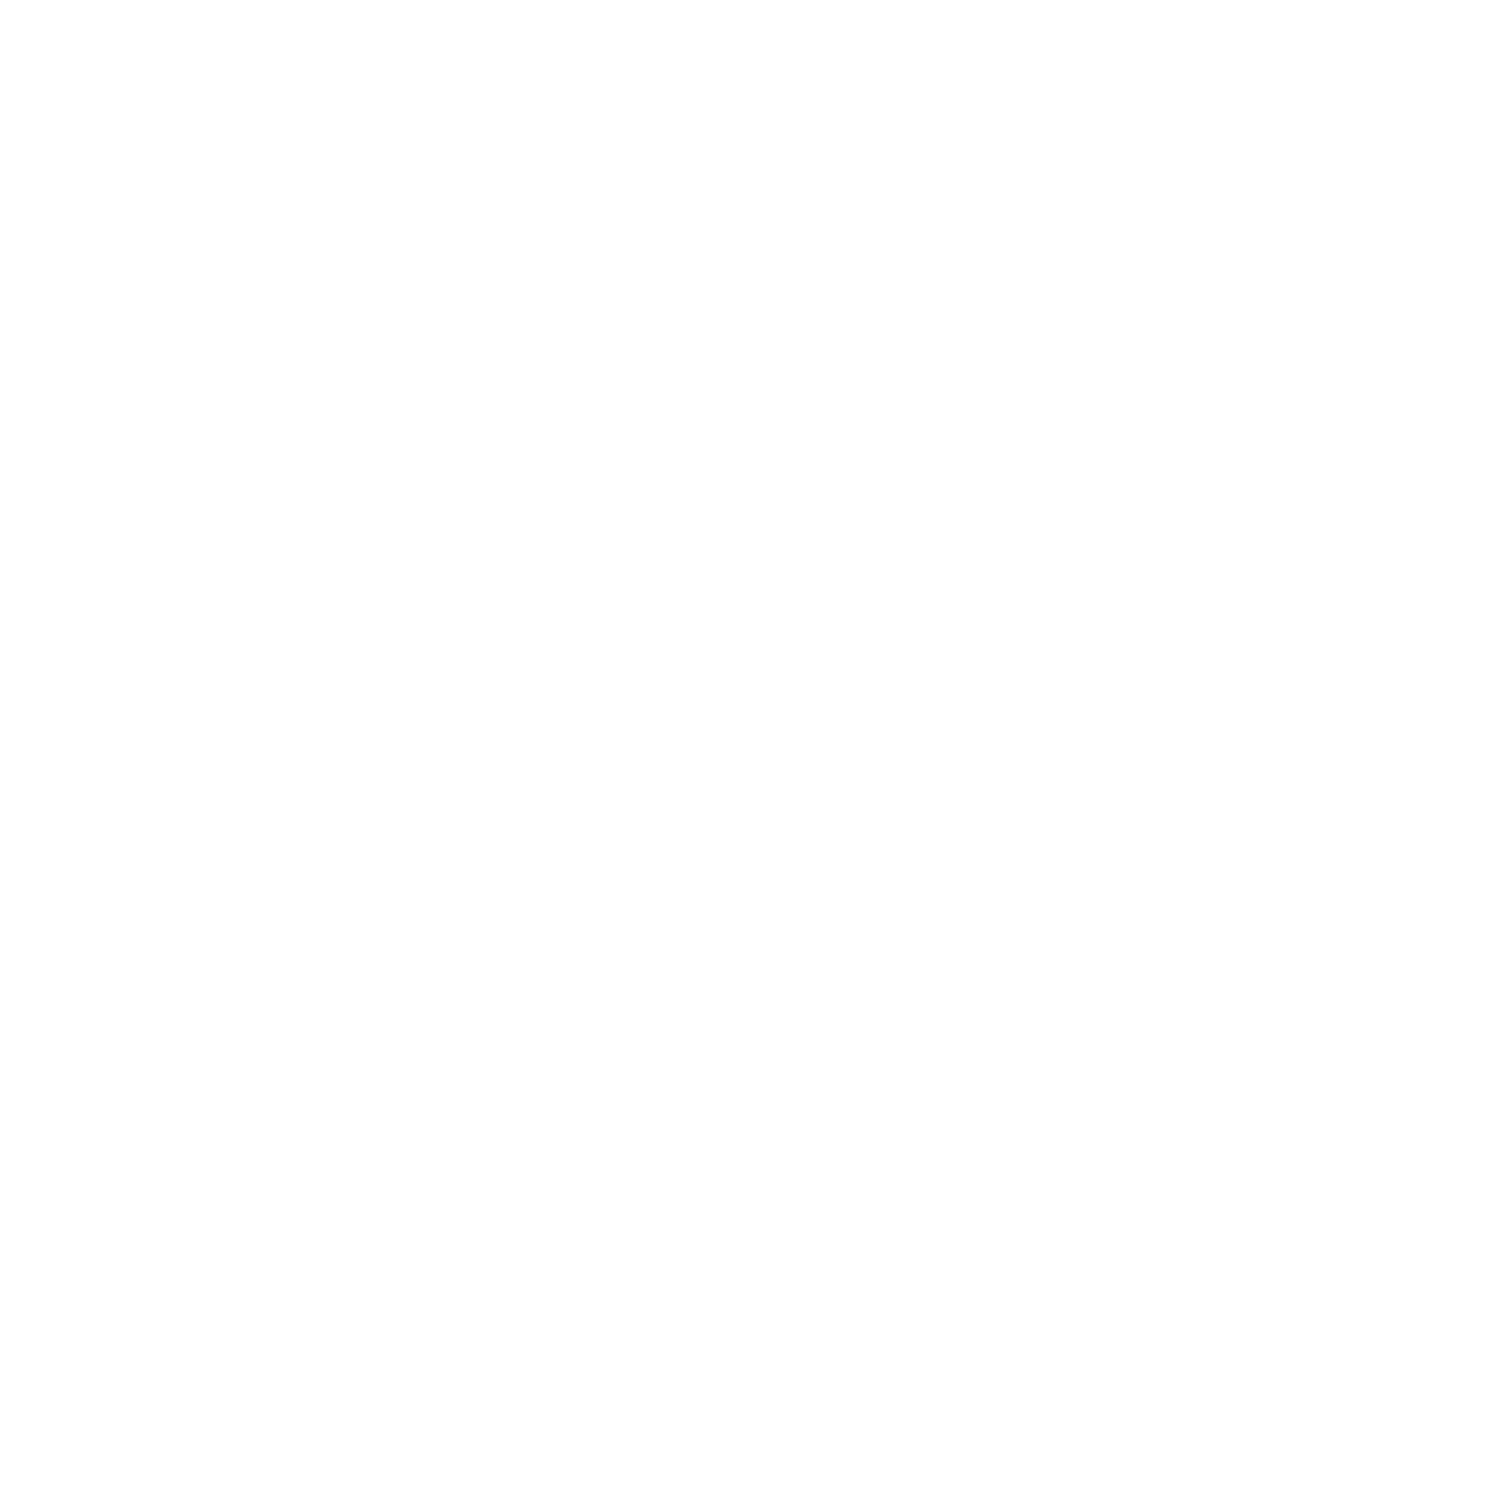 Larry H Miller Nissan